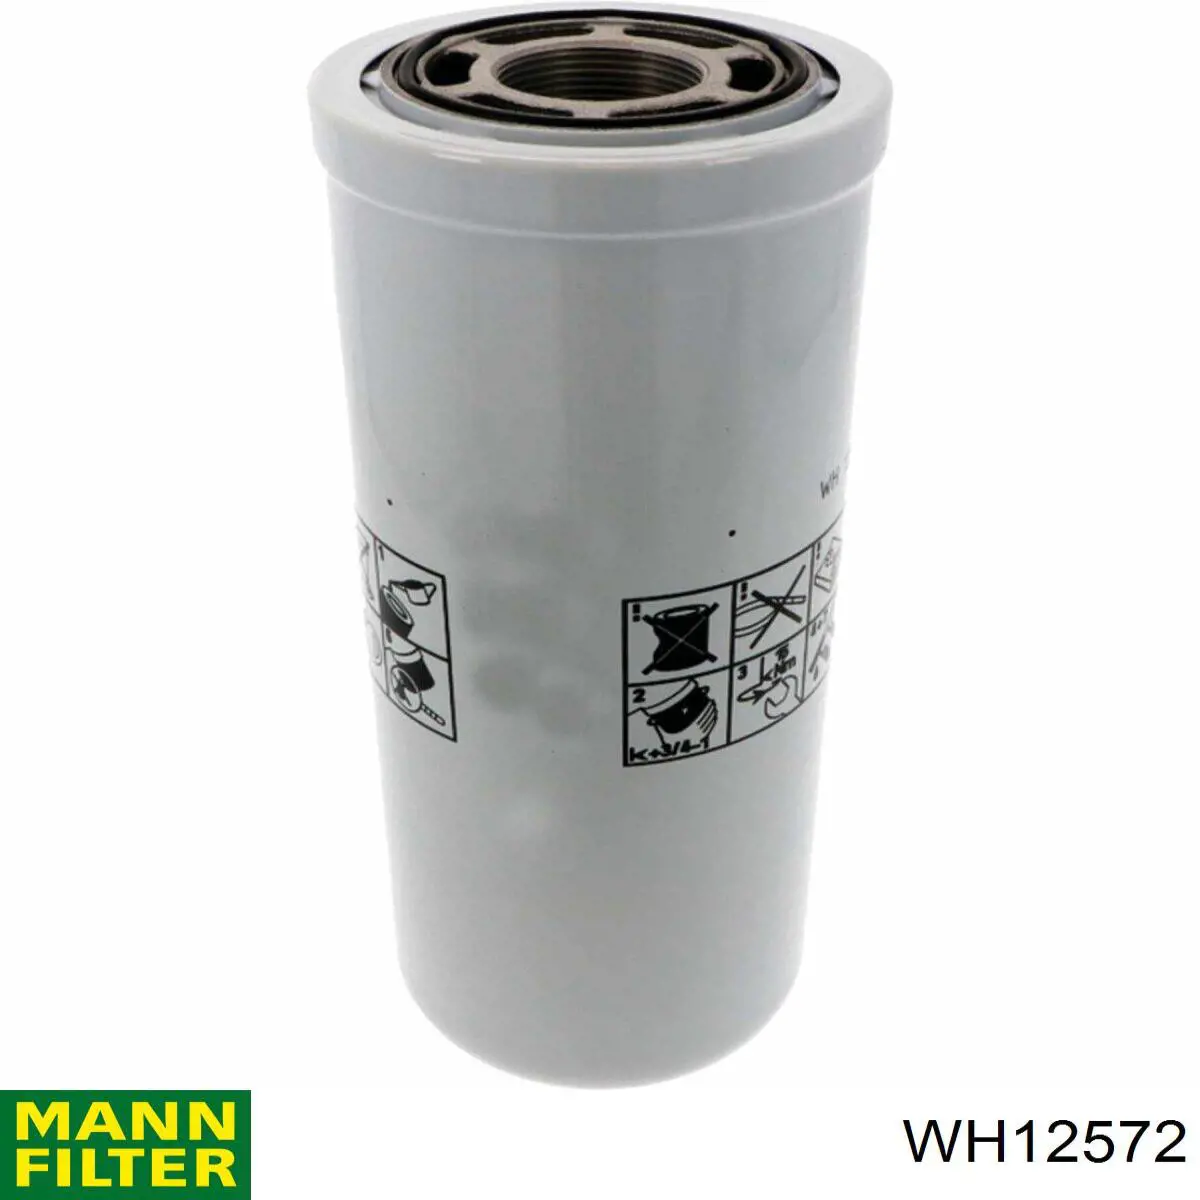 ZP3533MG FIL Filter фильтр гидравлической системы